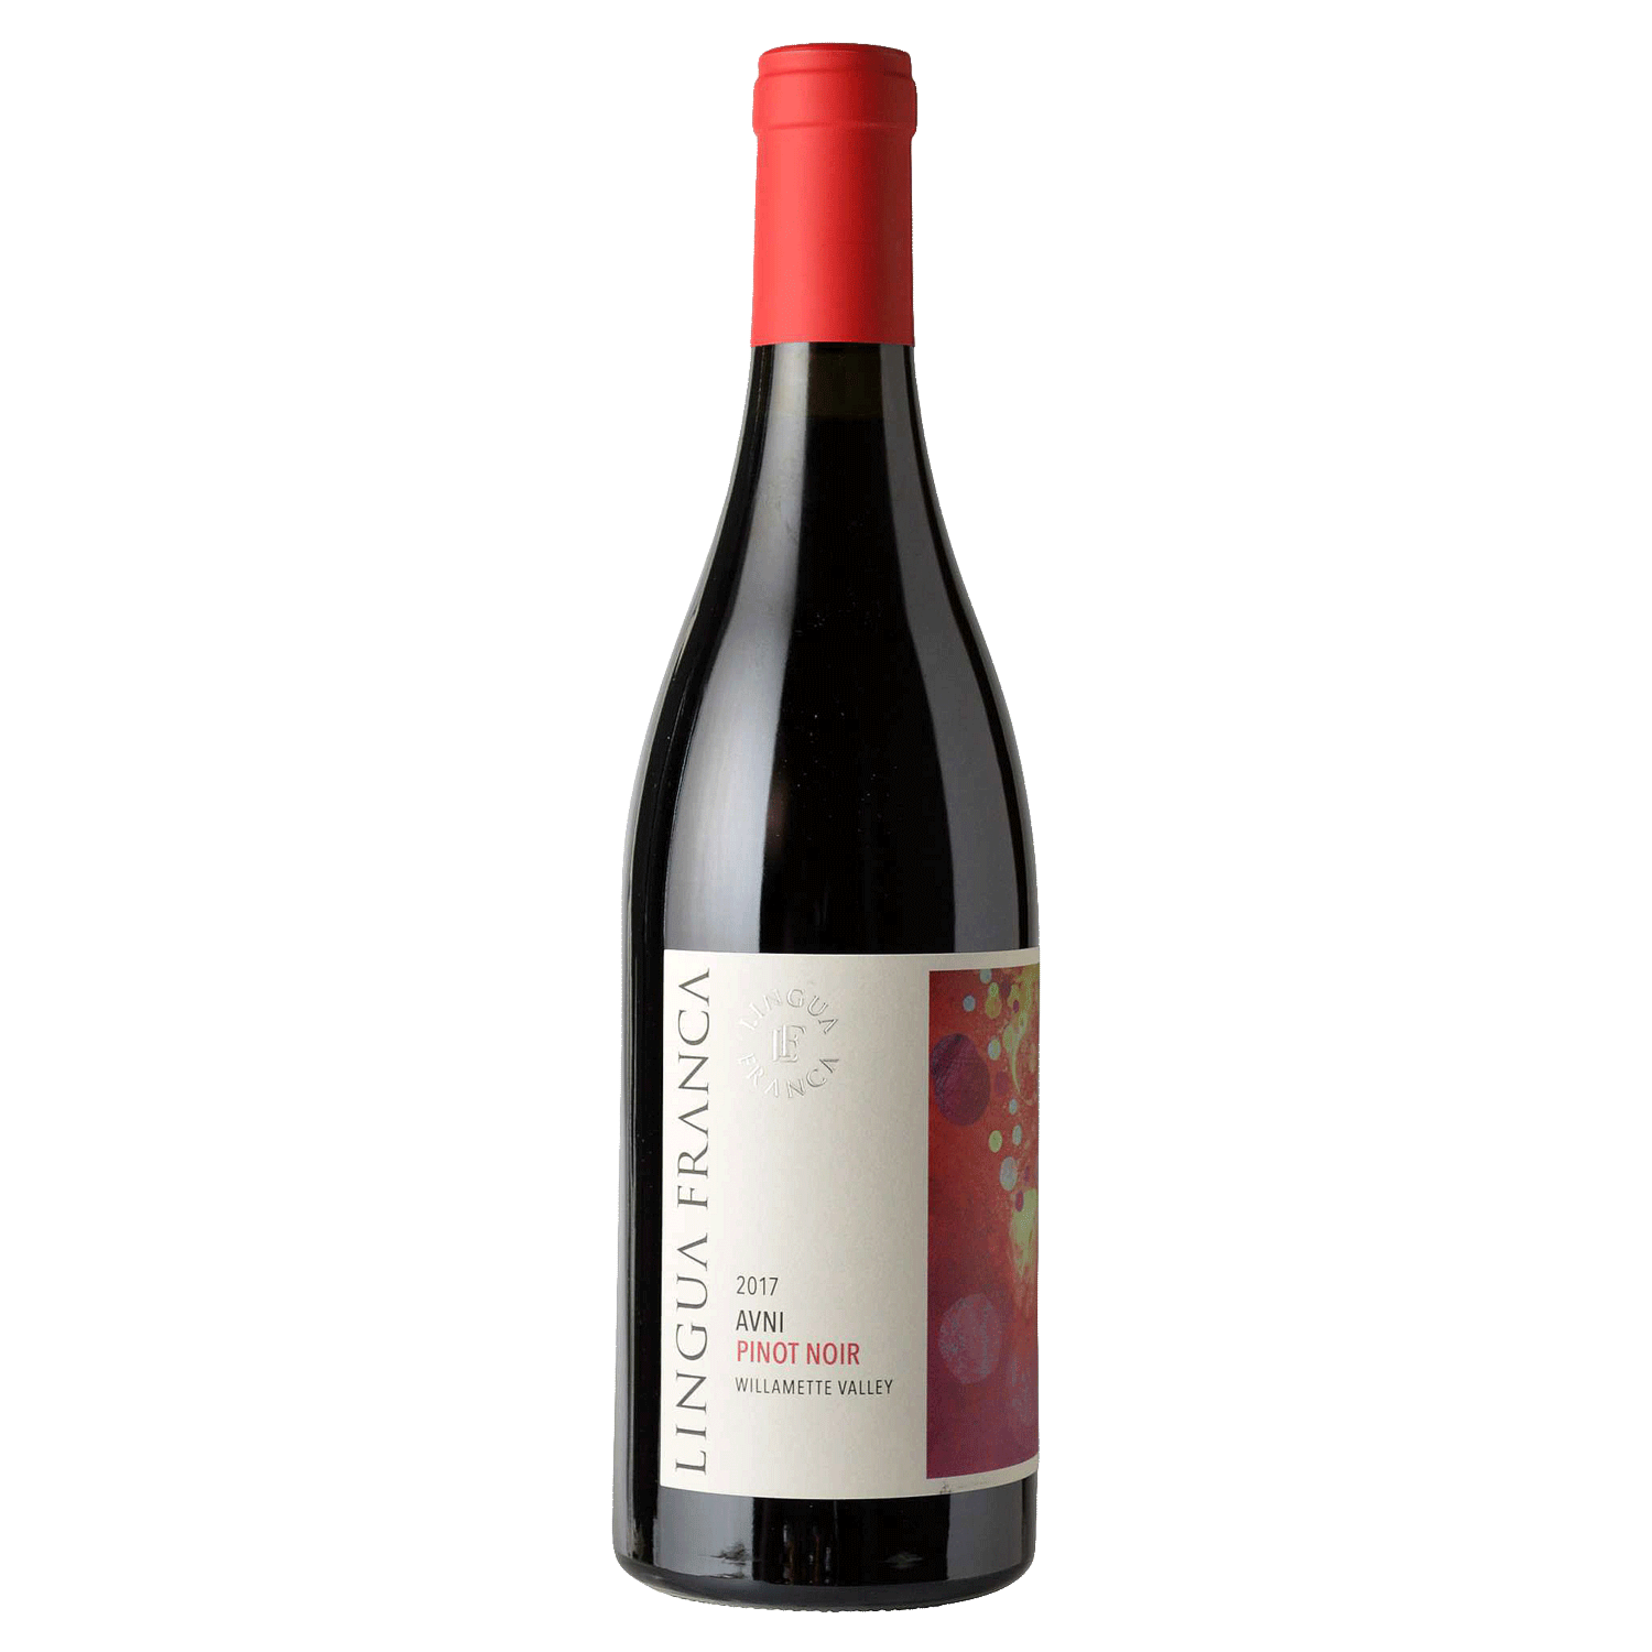 Wine Lingua Franca Pinot Noir Avni Willamette Valley 2019